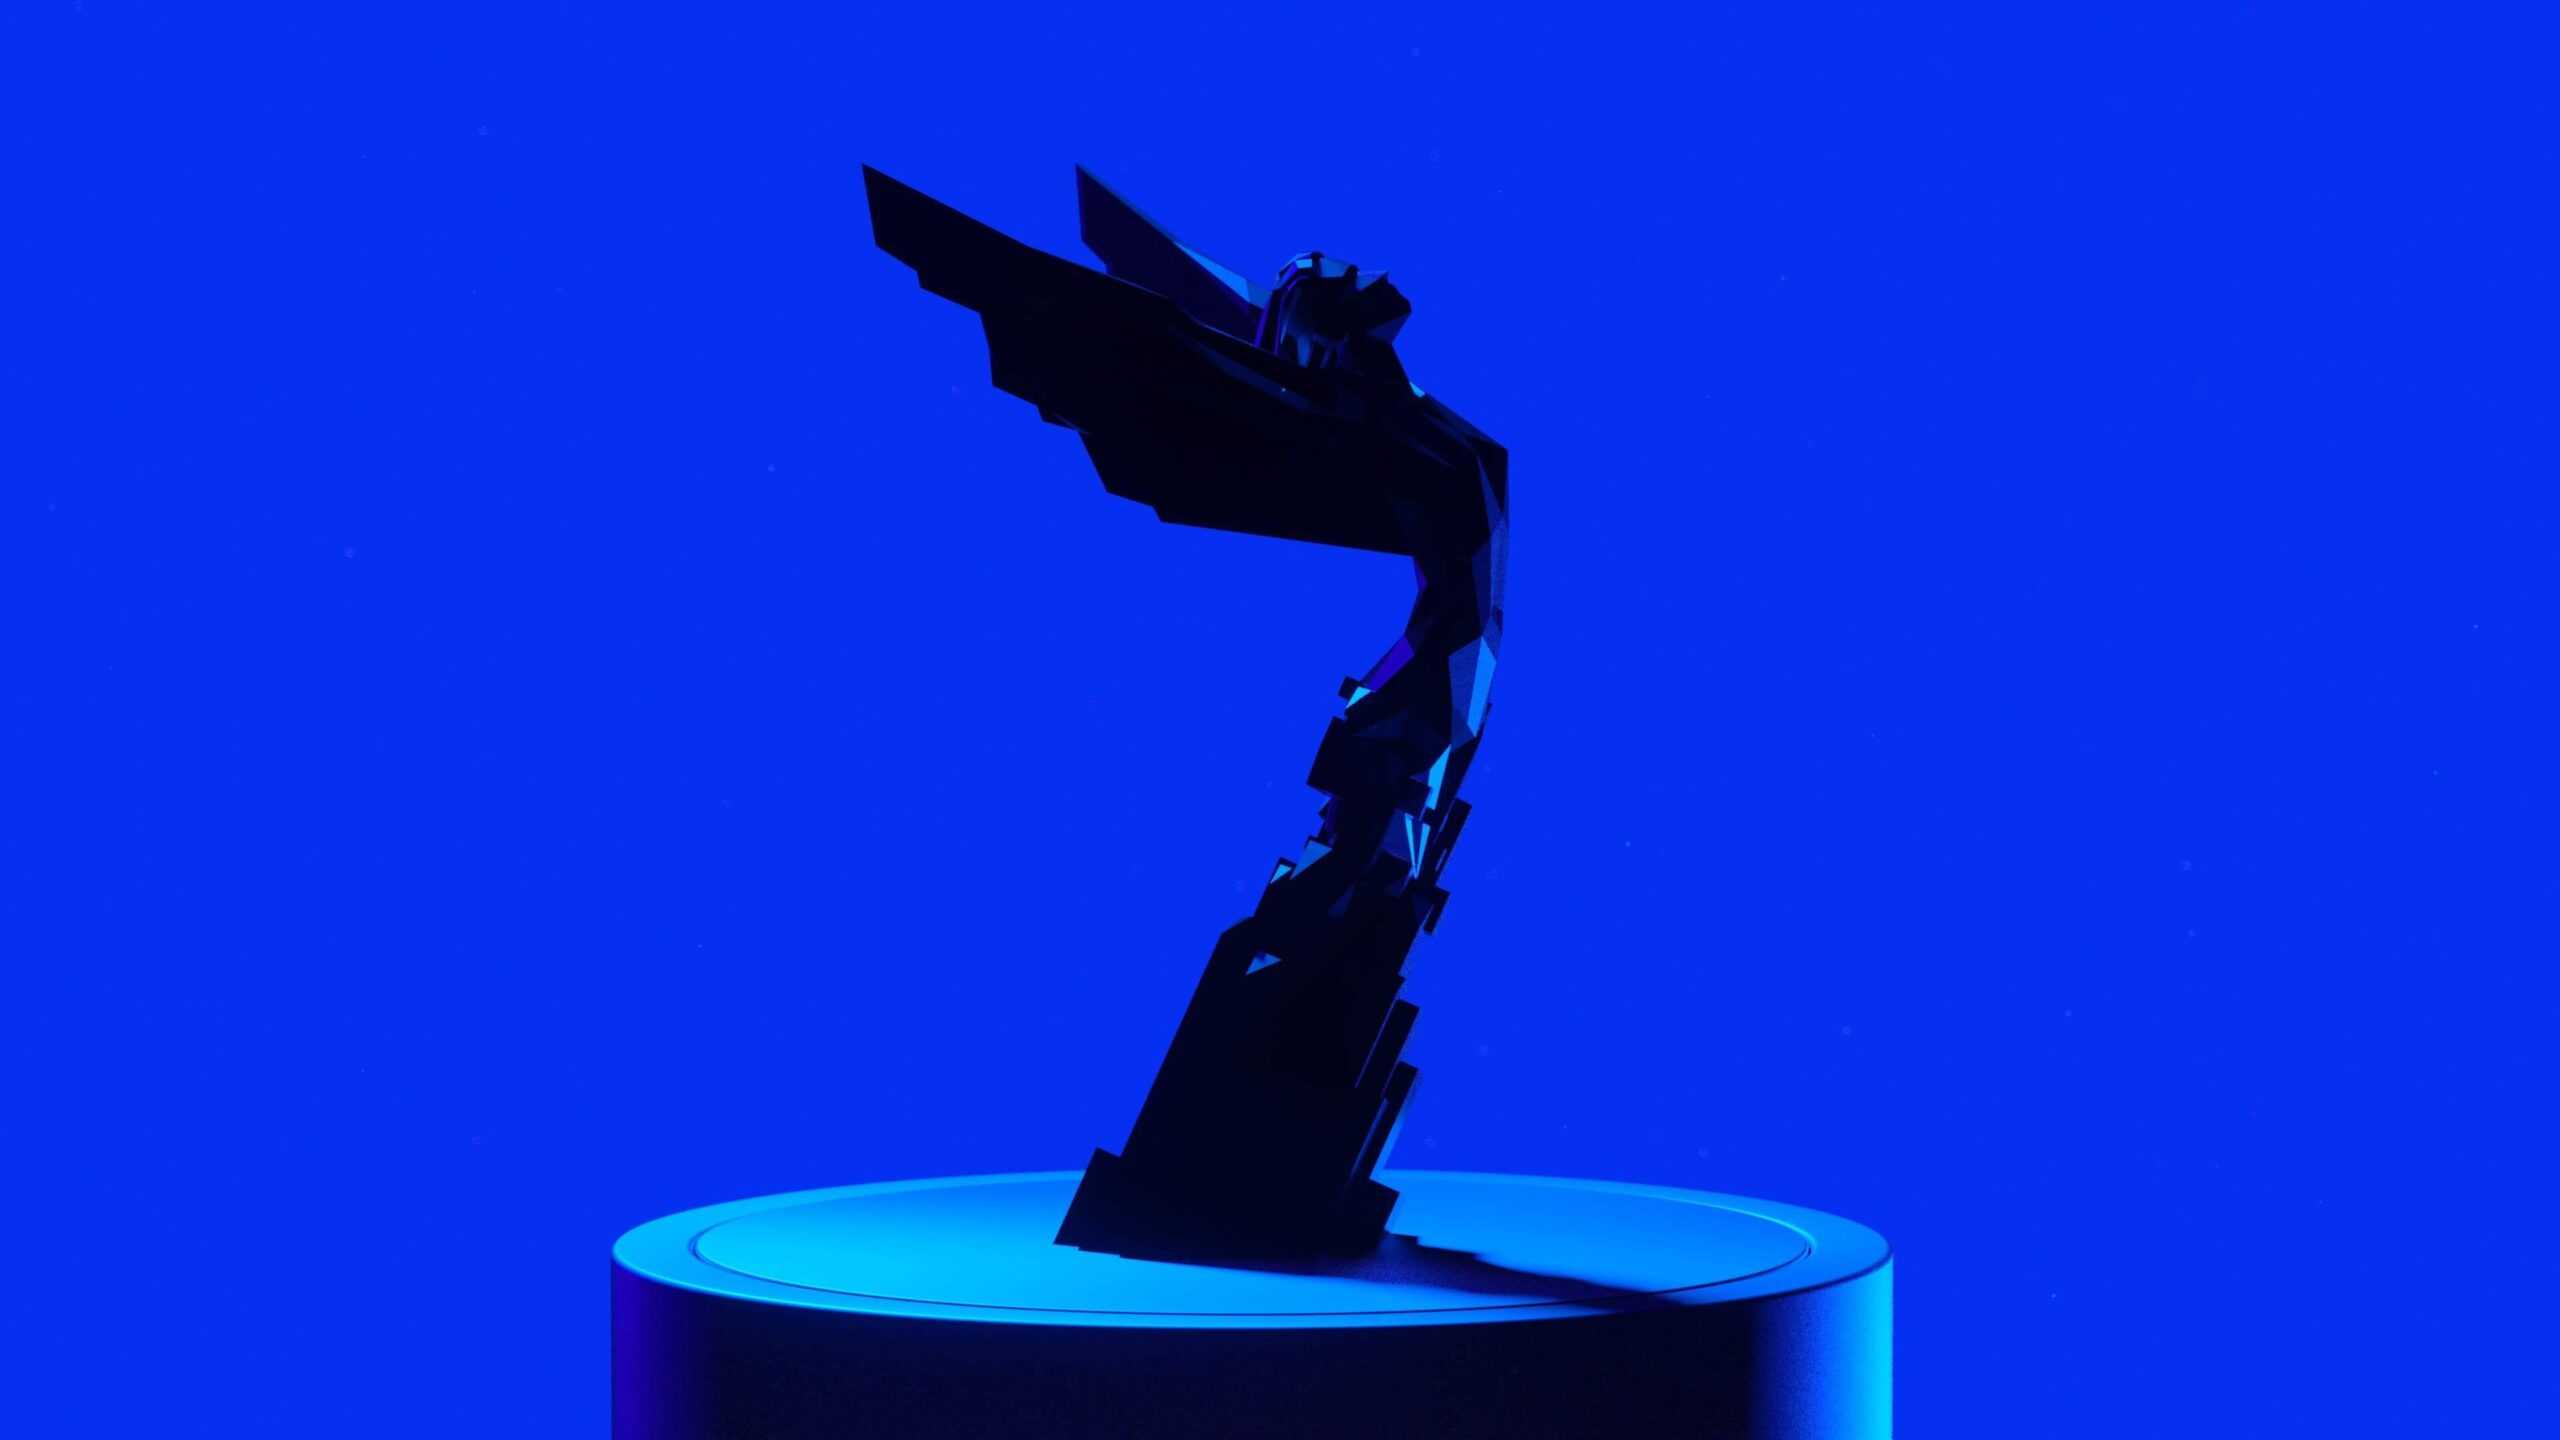 Valve огласила лауреатов премии steam awards 2020 - 4pda